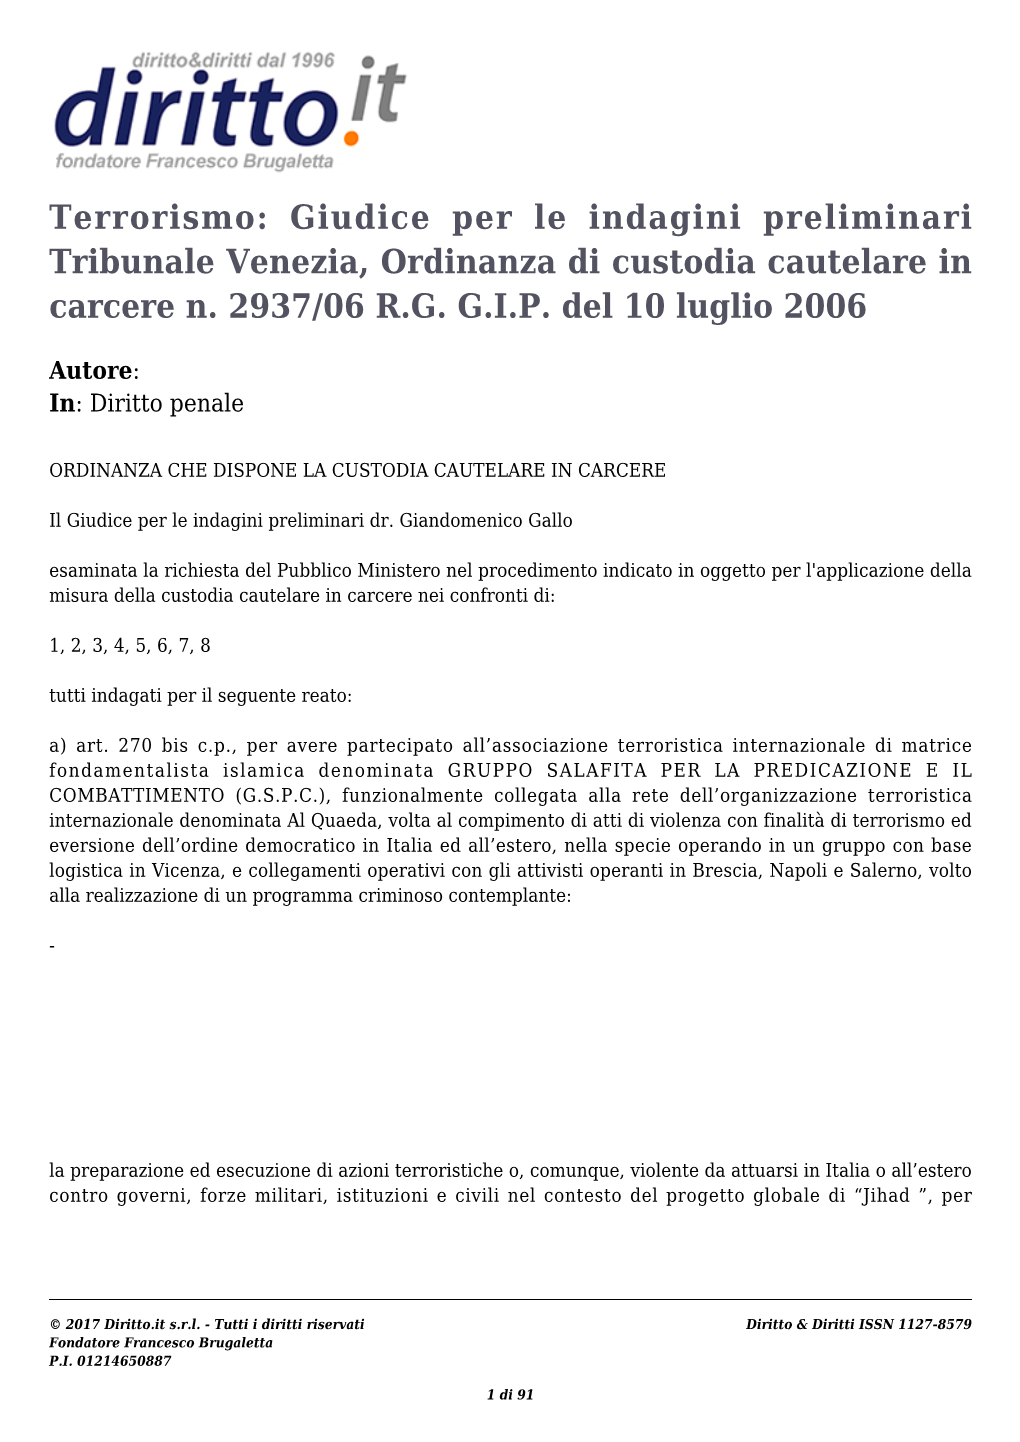 Terrorismo: Giudice Per Le Indagini Preliminari Tribunale Venezia, Ordinanza Di Custodia Cautelare in Carcere N